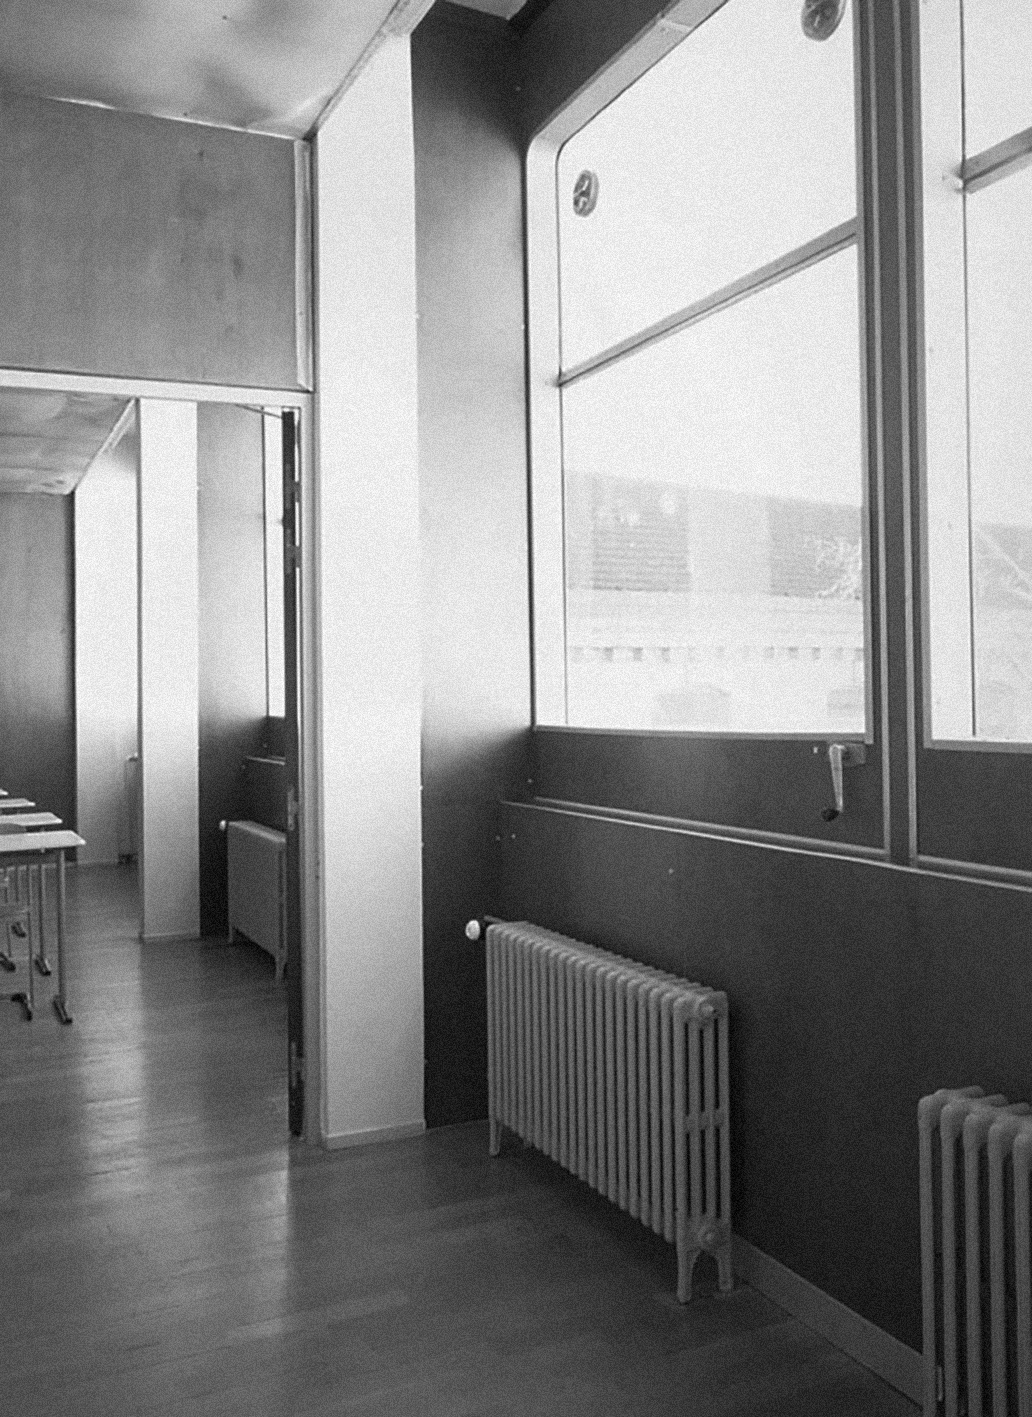 Secondary school Paul-Poiret, Paris, 1959 (J. et B. Ogé, architects). Facades panels in ribbed aluminum sheet by Jean Prouvé-CIMT.